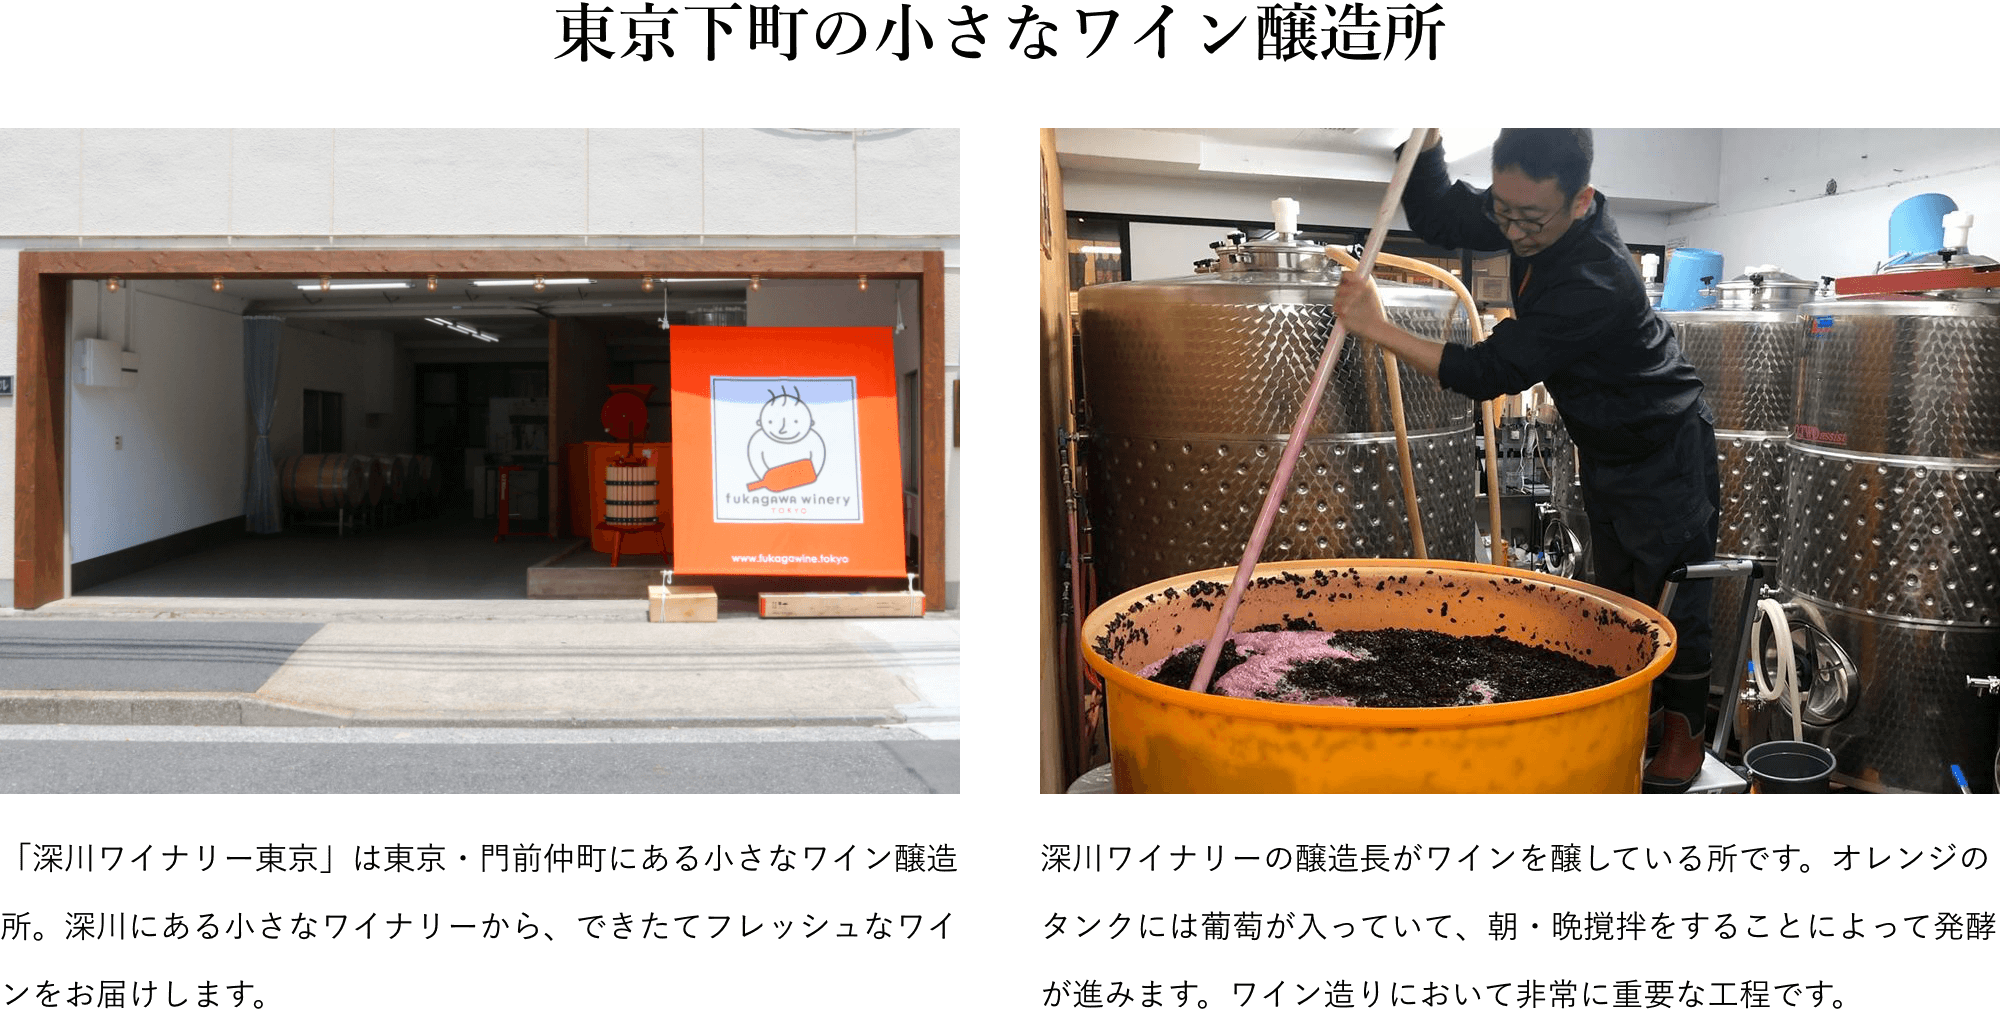 「深川ワイナリー東京」は東京・門前仲町にある小さなワイン醸造所。深川にある小さなワイナリーから、できたてフレッシュなワインをお届けします。深川ワイナリーの醸造長がワインを醸している所です。オレンジのタンクには葡萄が入っていて、朝・晩撹拌をすることによって発酵が進みます。ワイン造りにおいて非常に重要な工程です。